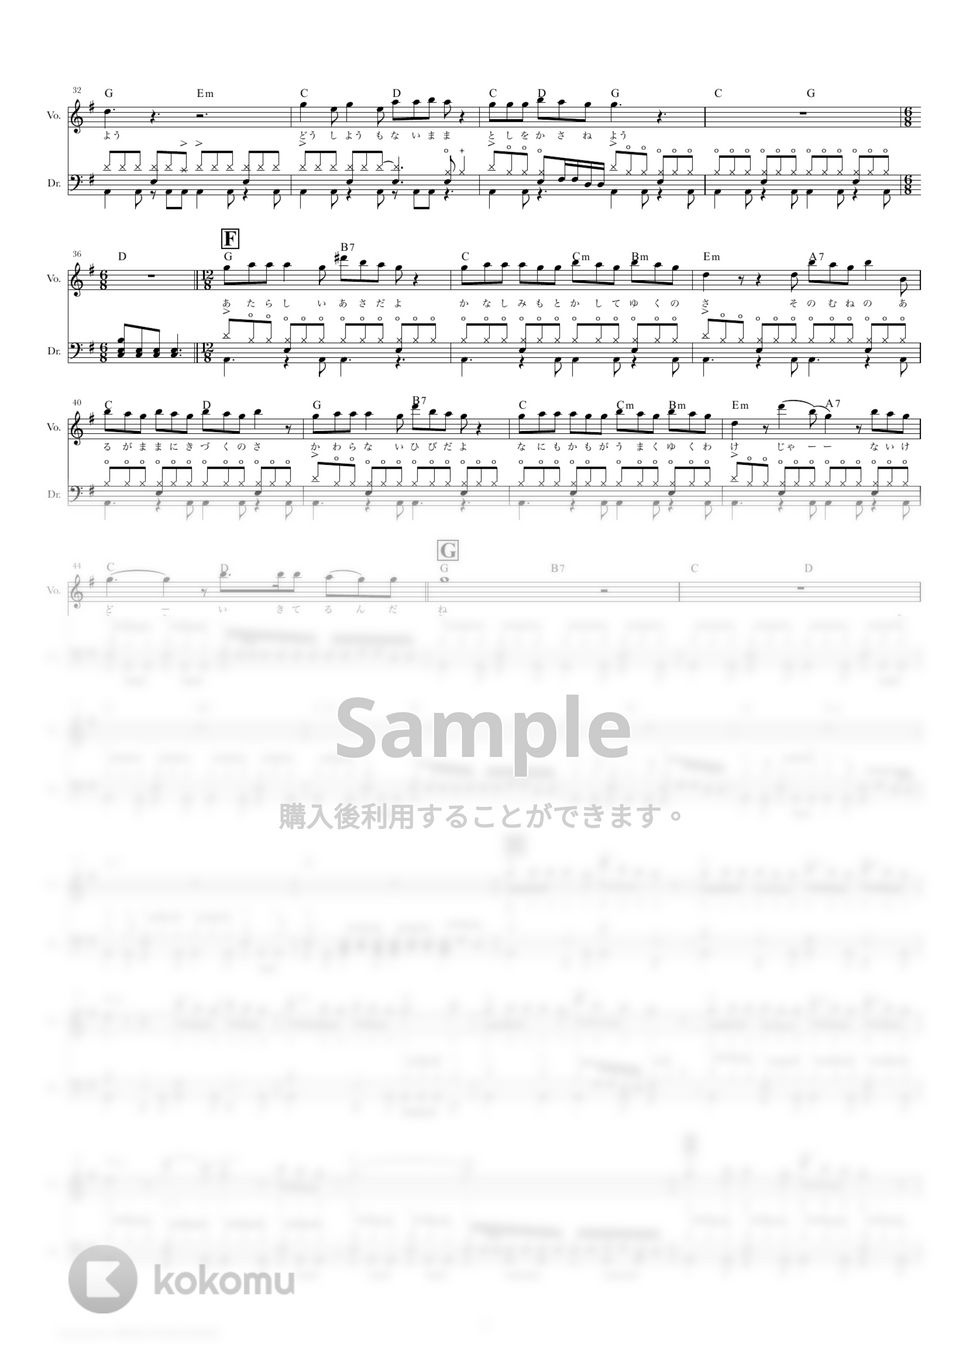 Hump Back - 新しい朝 (ドラムスコア・歌詞・コード付き) by TRIAD GUITAR SCHOOL